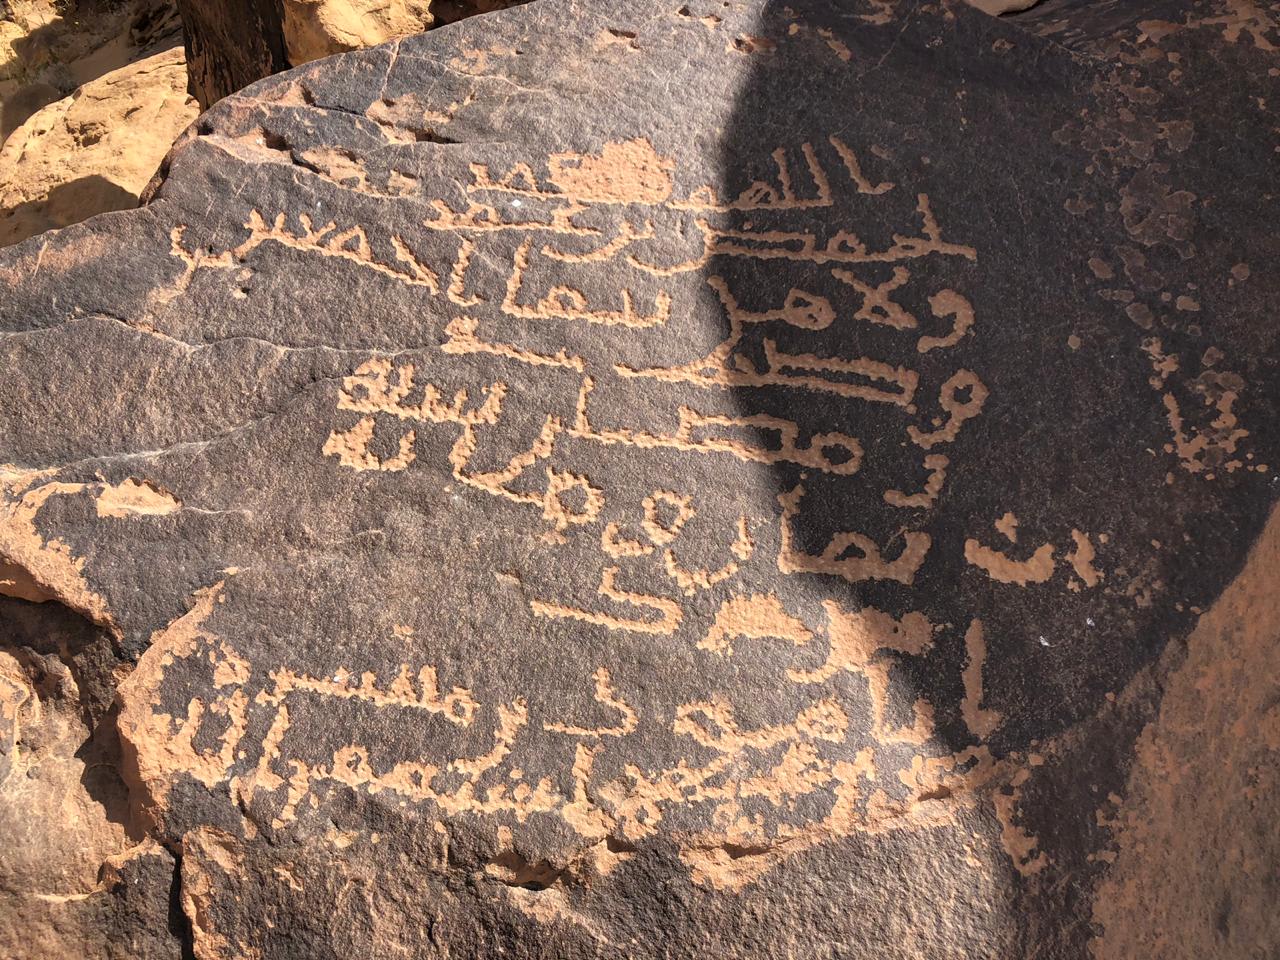 العثور على نقش تاريخي يعود لأكثر من ألف عام بالسعودية.. ما الذي كُتب فيه؟